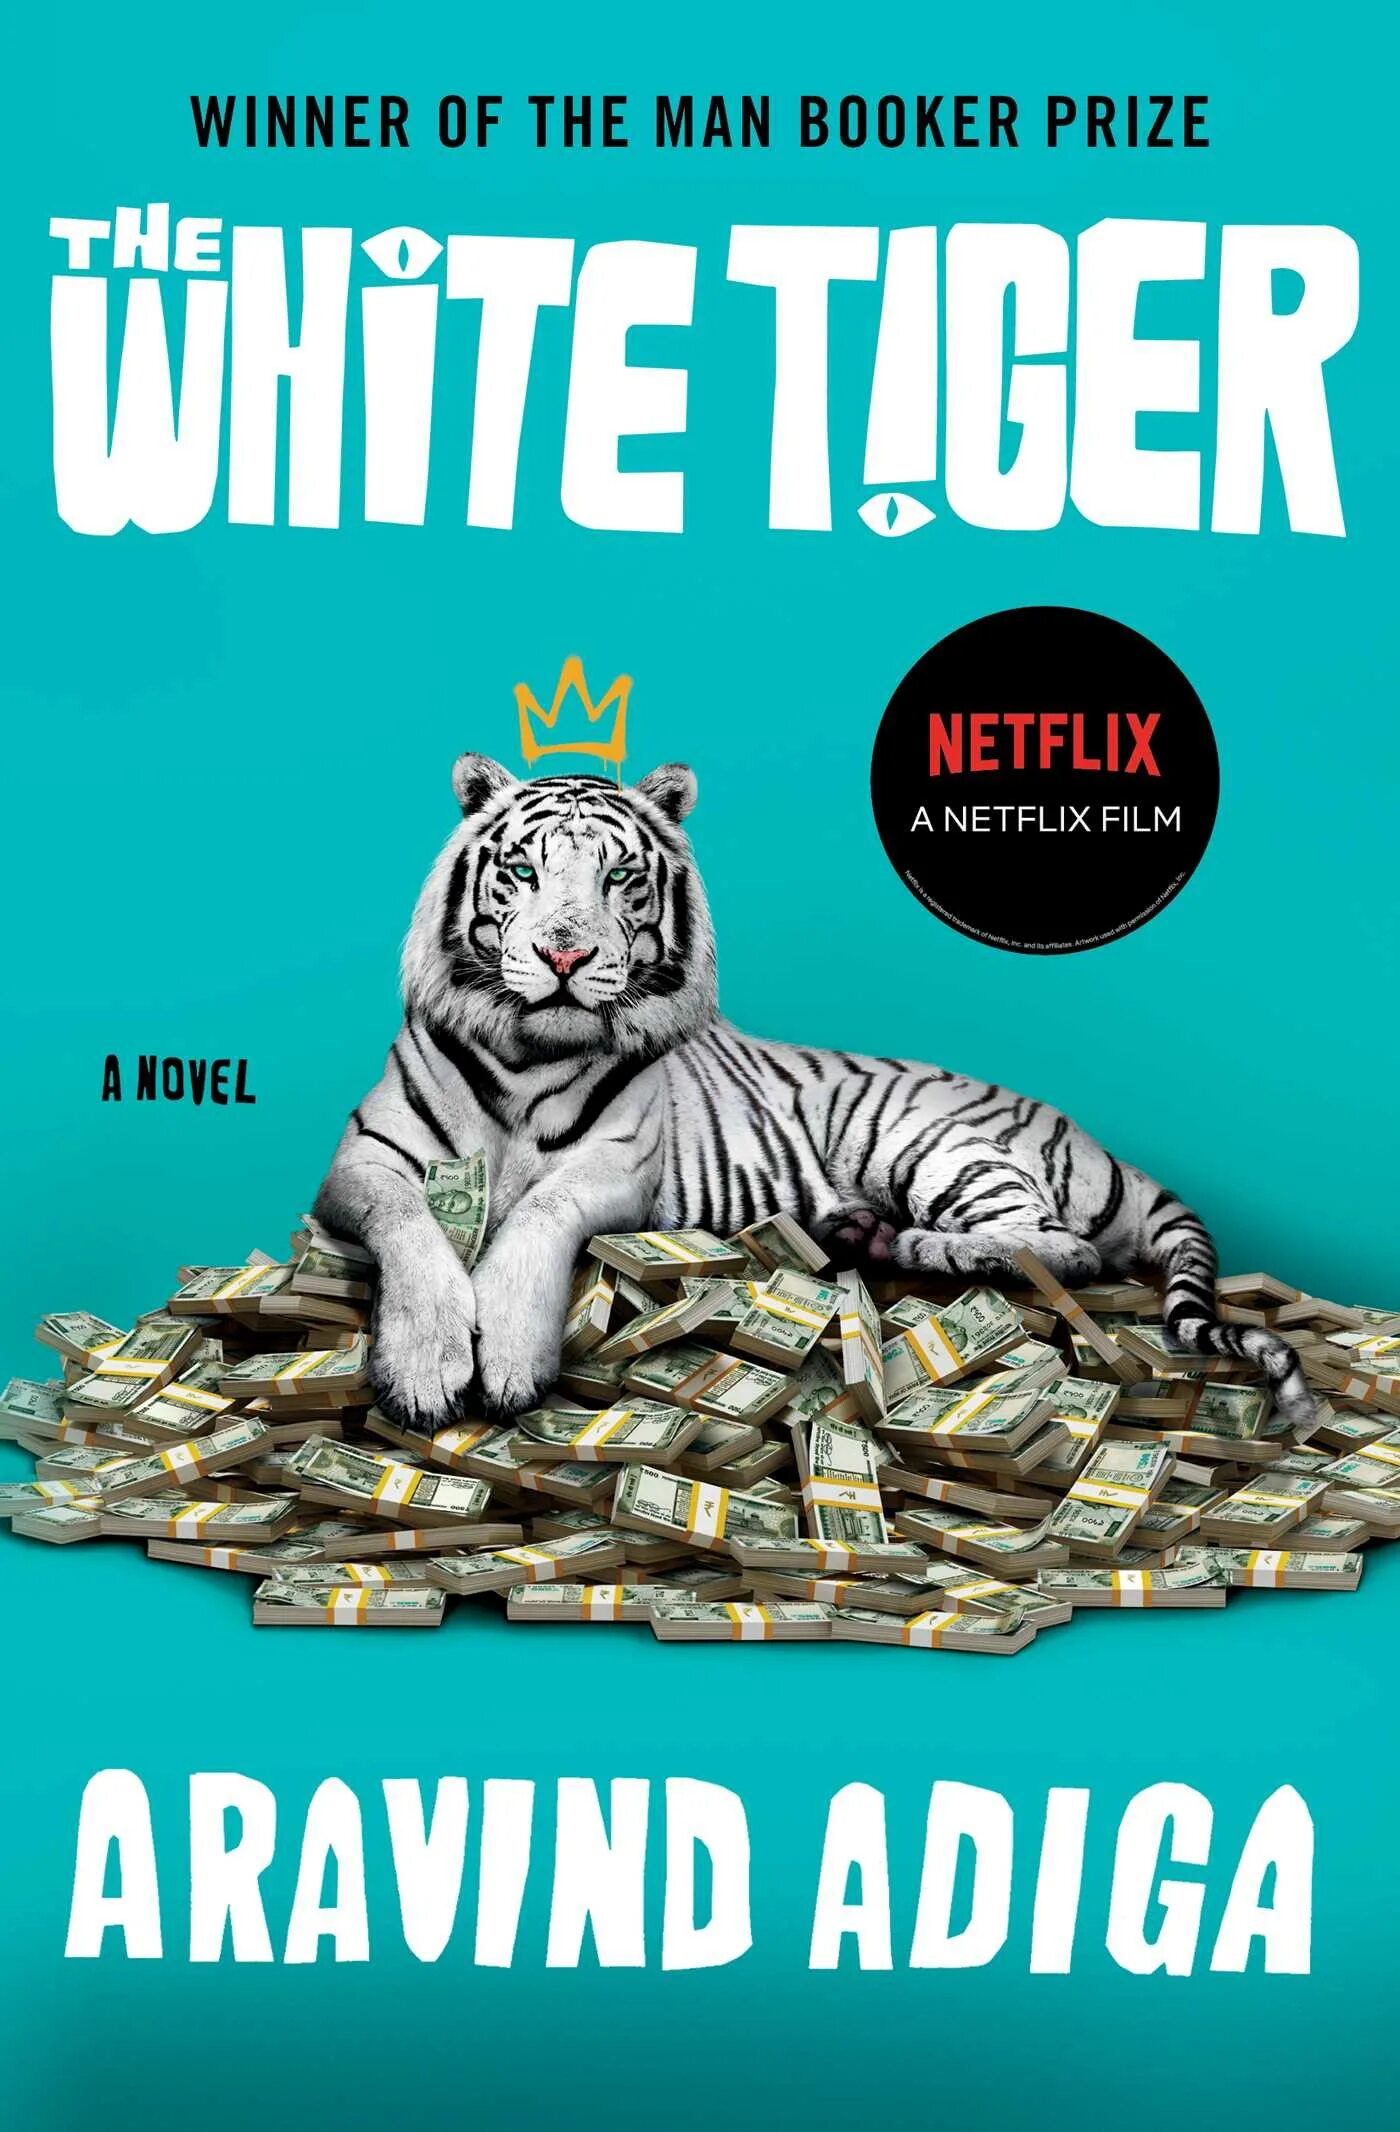 Тайгер книга. Аравинд Адига белый тигр. Книга белый тигр Аравинд Адига. The White Tiger by: Aravind Adiga. Аравинд Адига - белый тигр обложка.